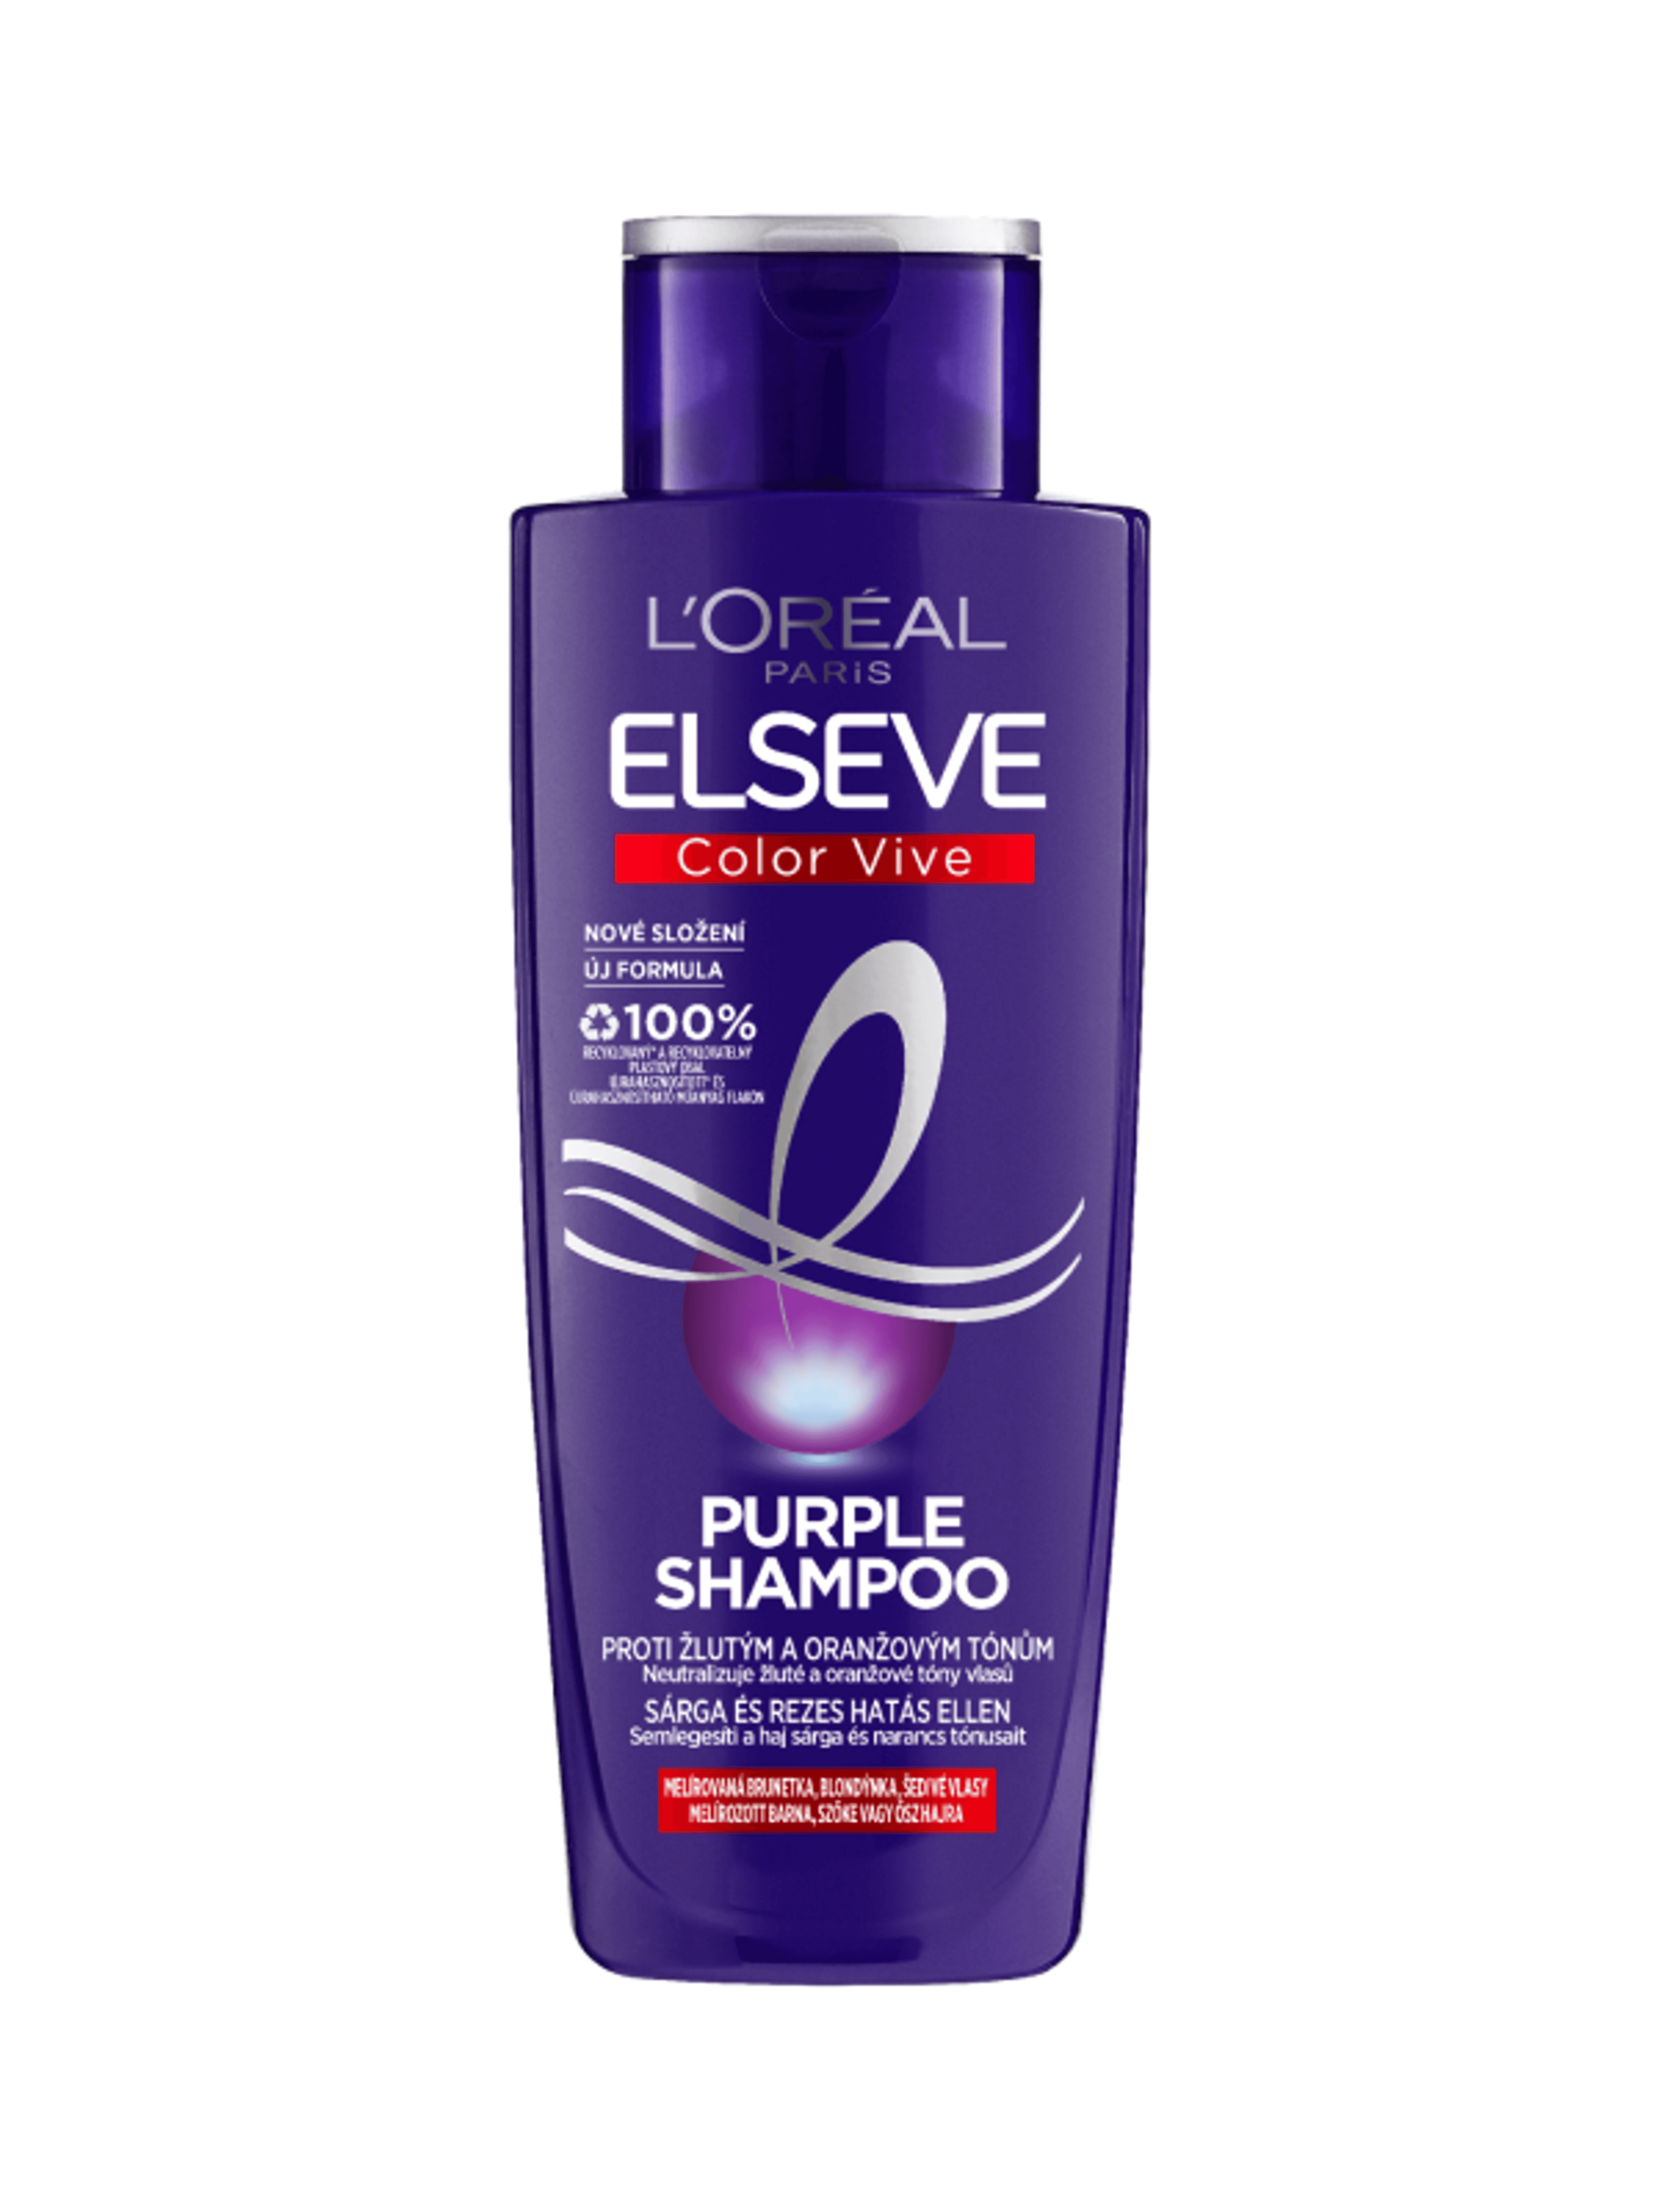 L'Oréal Paris Elseve Color Vive Purple sampon sárga és rezes hatás ellen - 200 ml